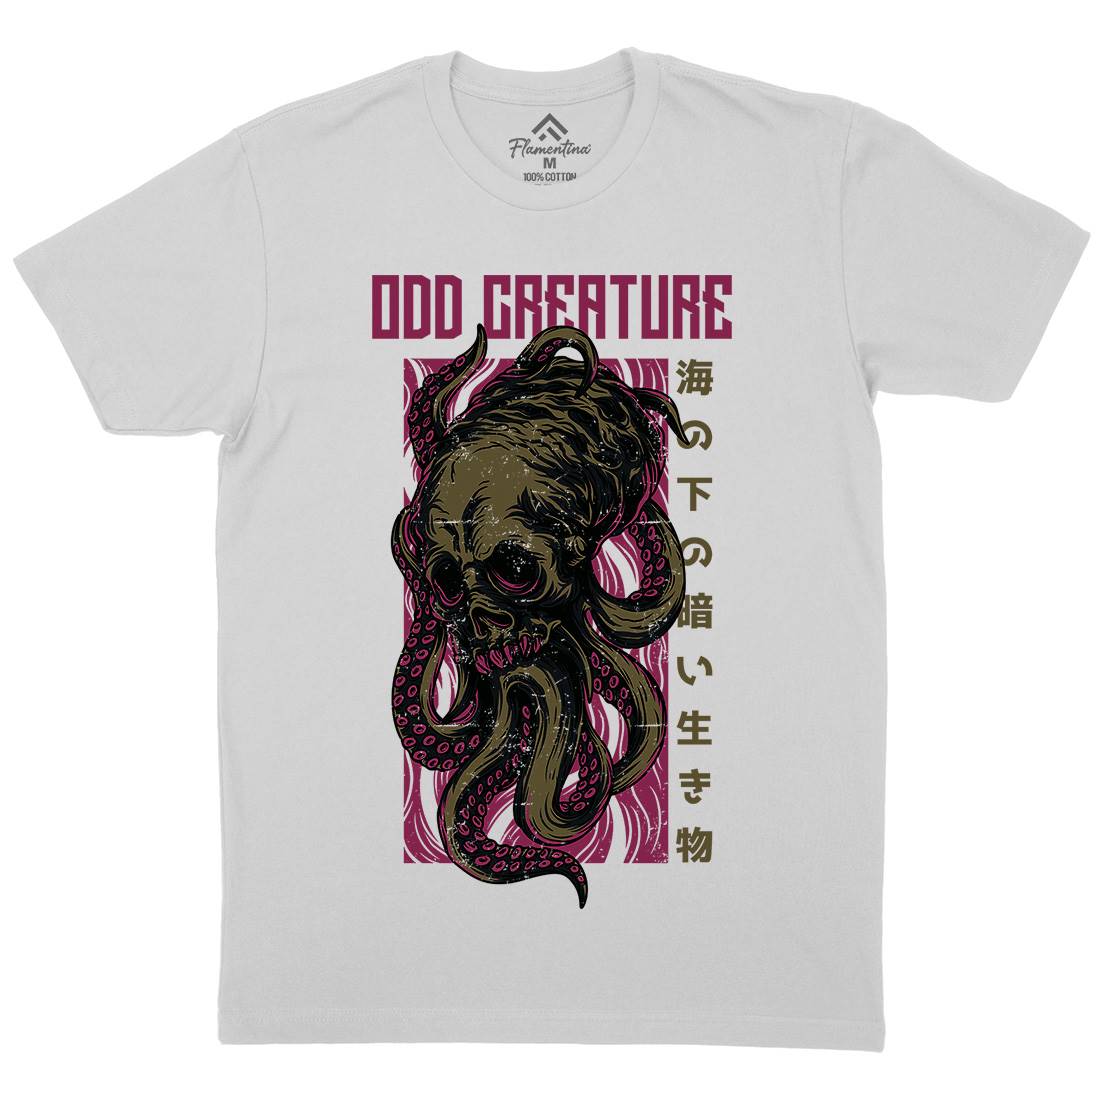 Octopus Mens Crew Neck T-Shirt Navy D670